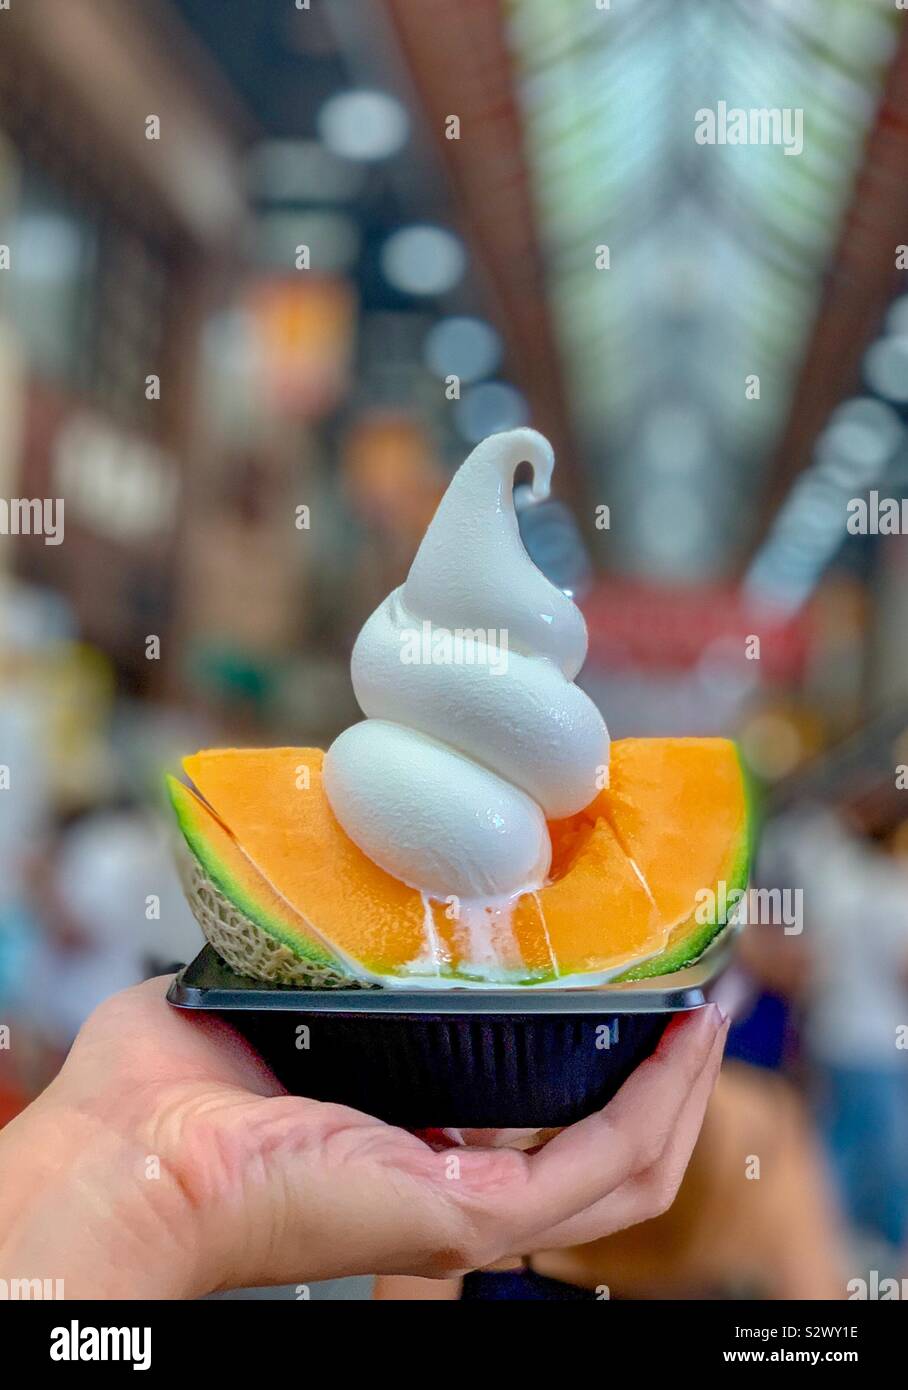 La crème glacée sur le melon au marché Kuromon, Osaka-Shi, Japon Banque D'Images